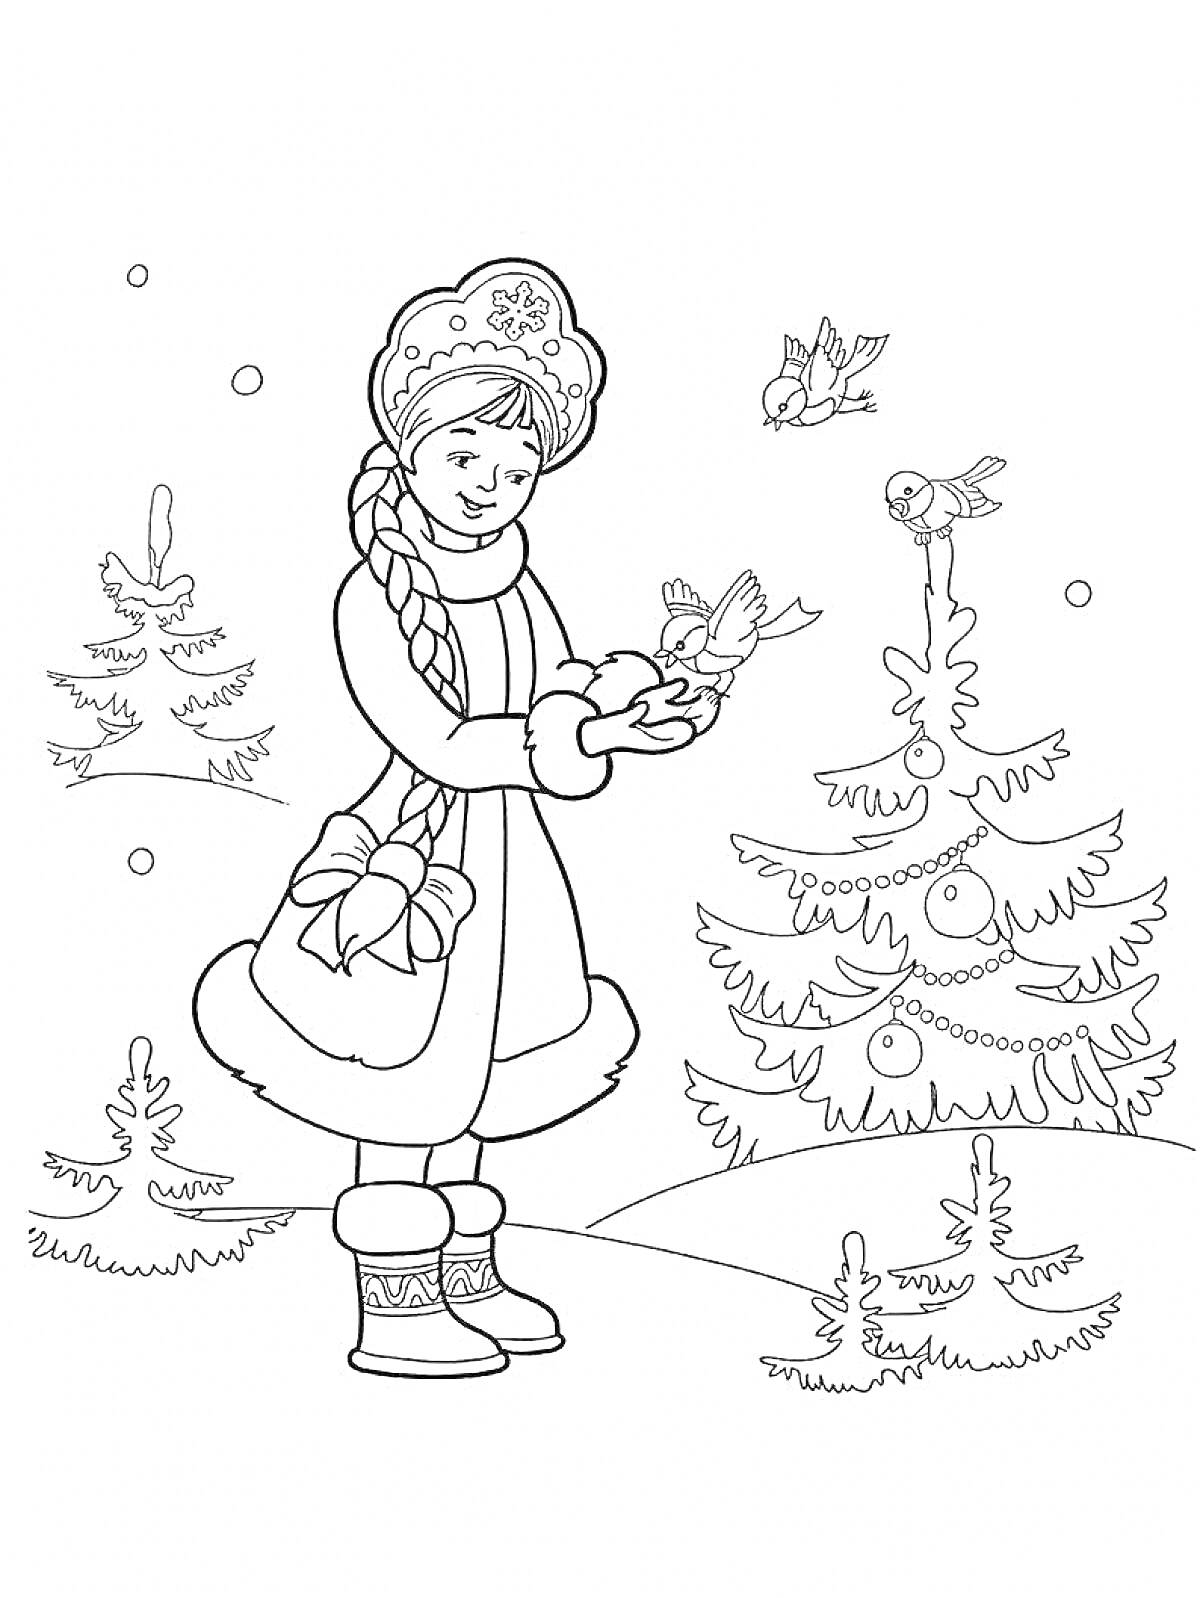 РаскраскаДевочка с косичкой в зимней шапке и пальто держит птицу рядом с украшенной елкой, на фоне зимние ели и падающие снежинки